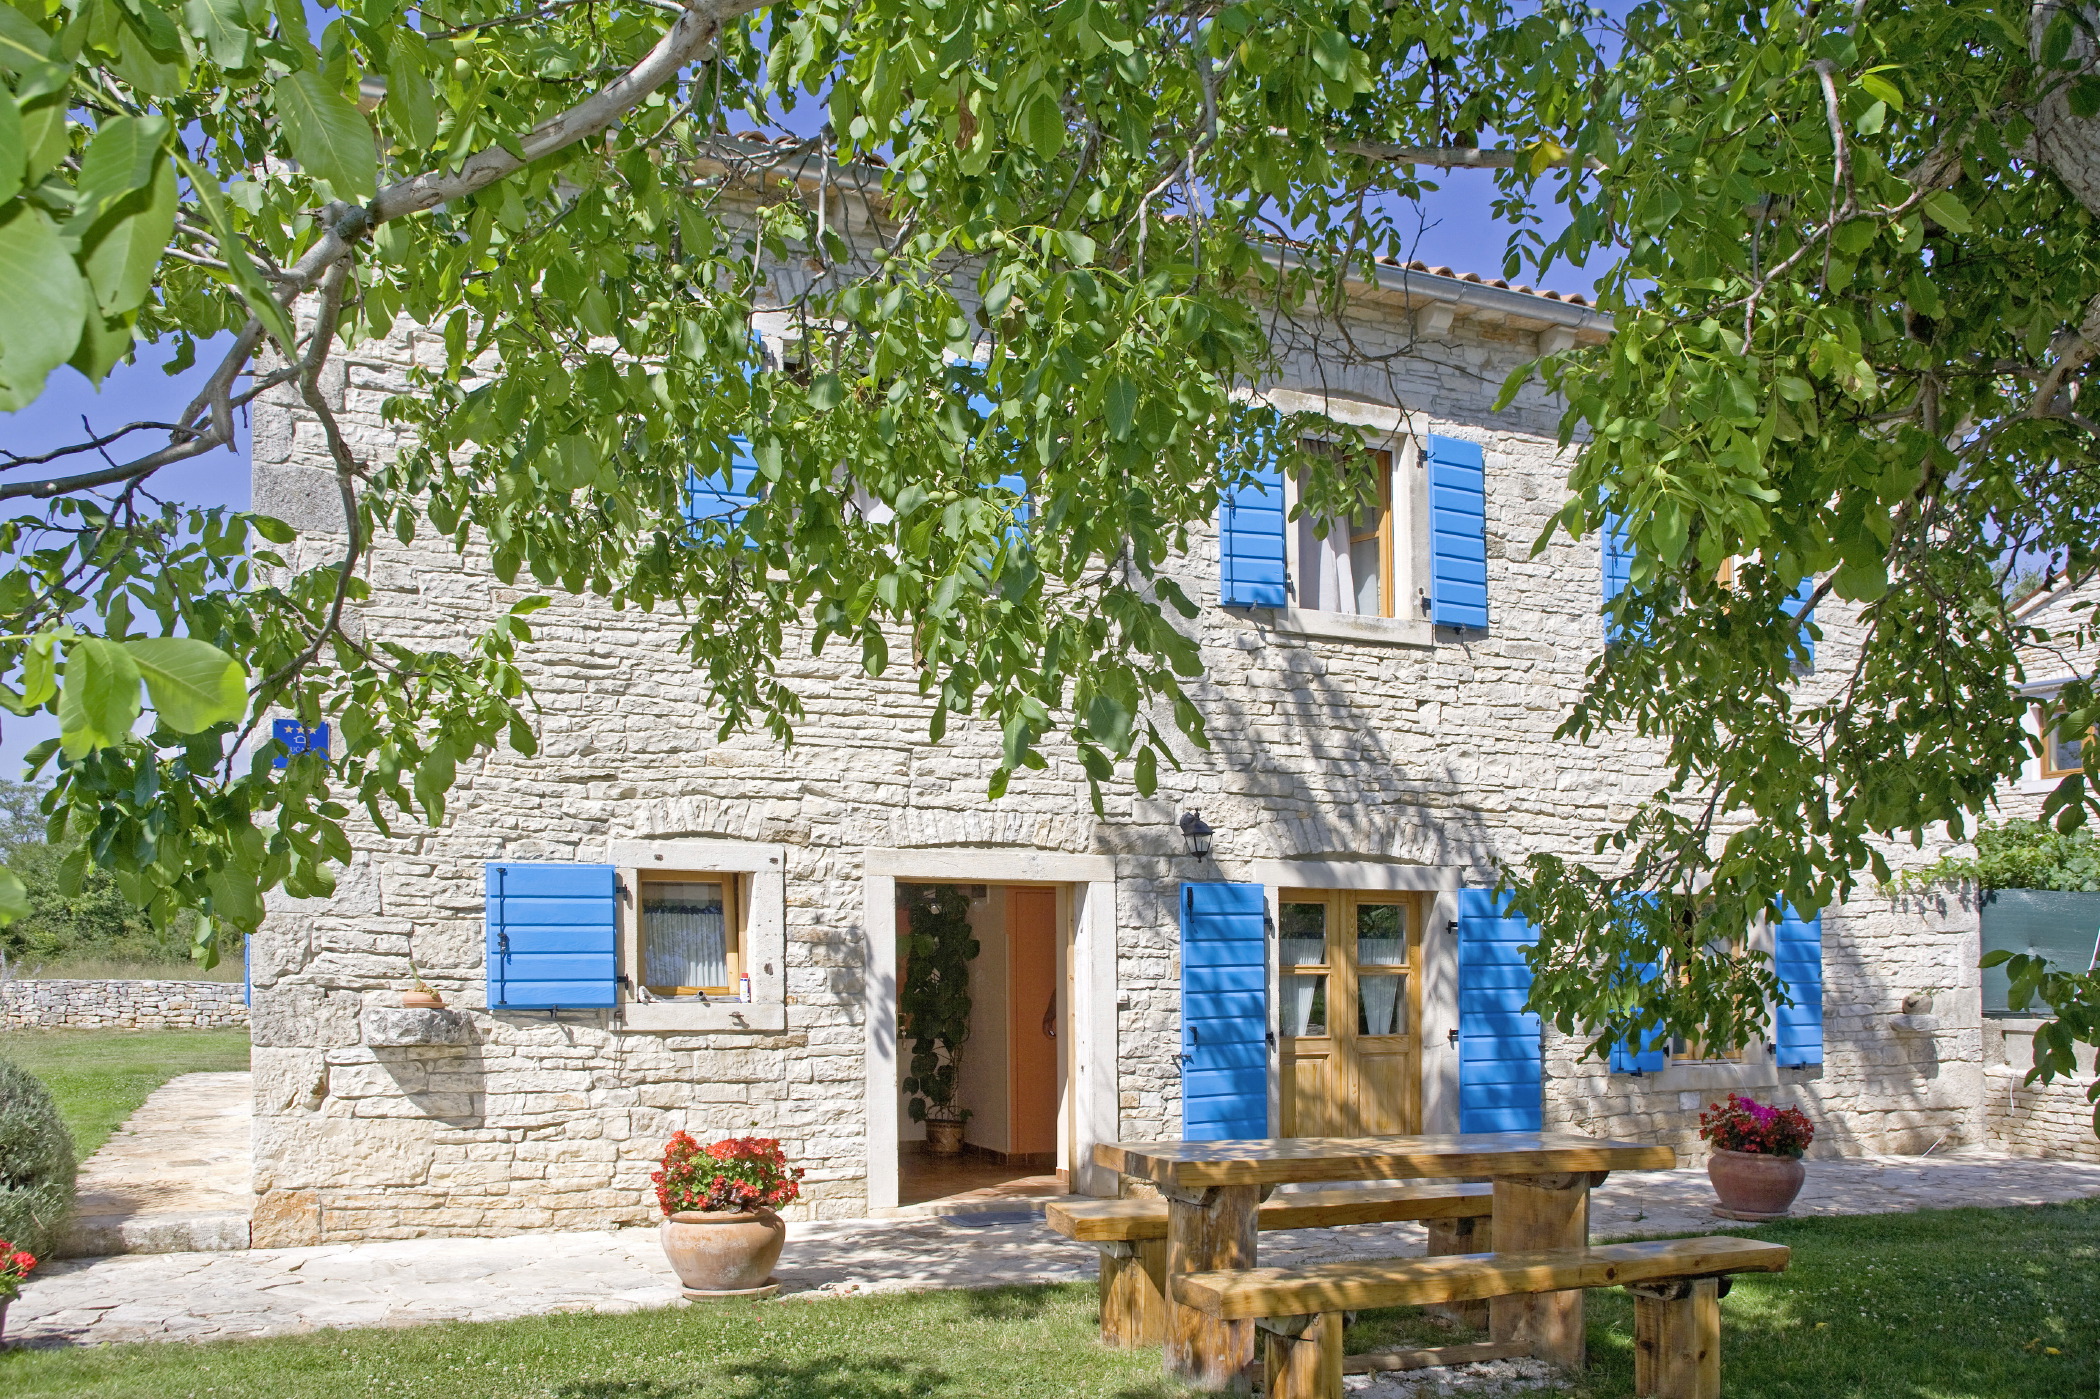 Ferienhaus Agricola * 2000 m2 Garten, privater Poo  in Kroatien